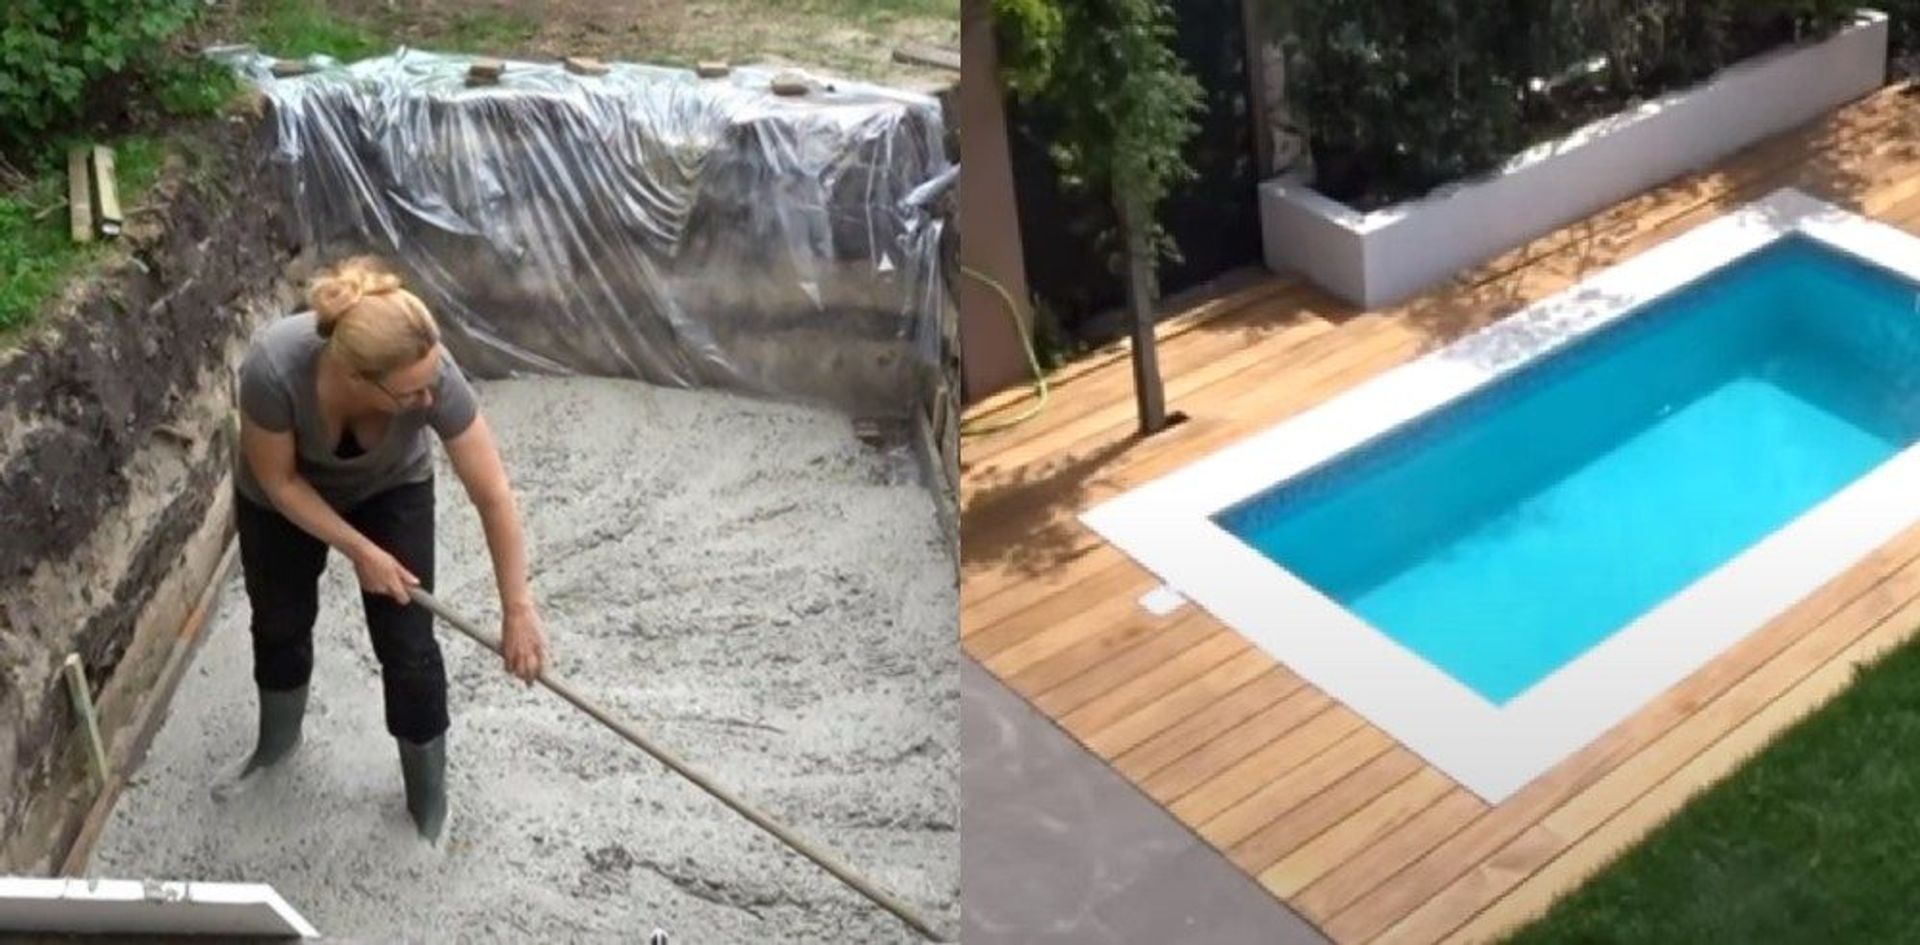 Zwembad in tuin: vrouw eigen bad achtertuin